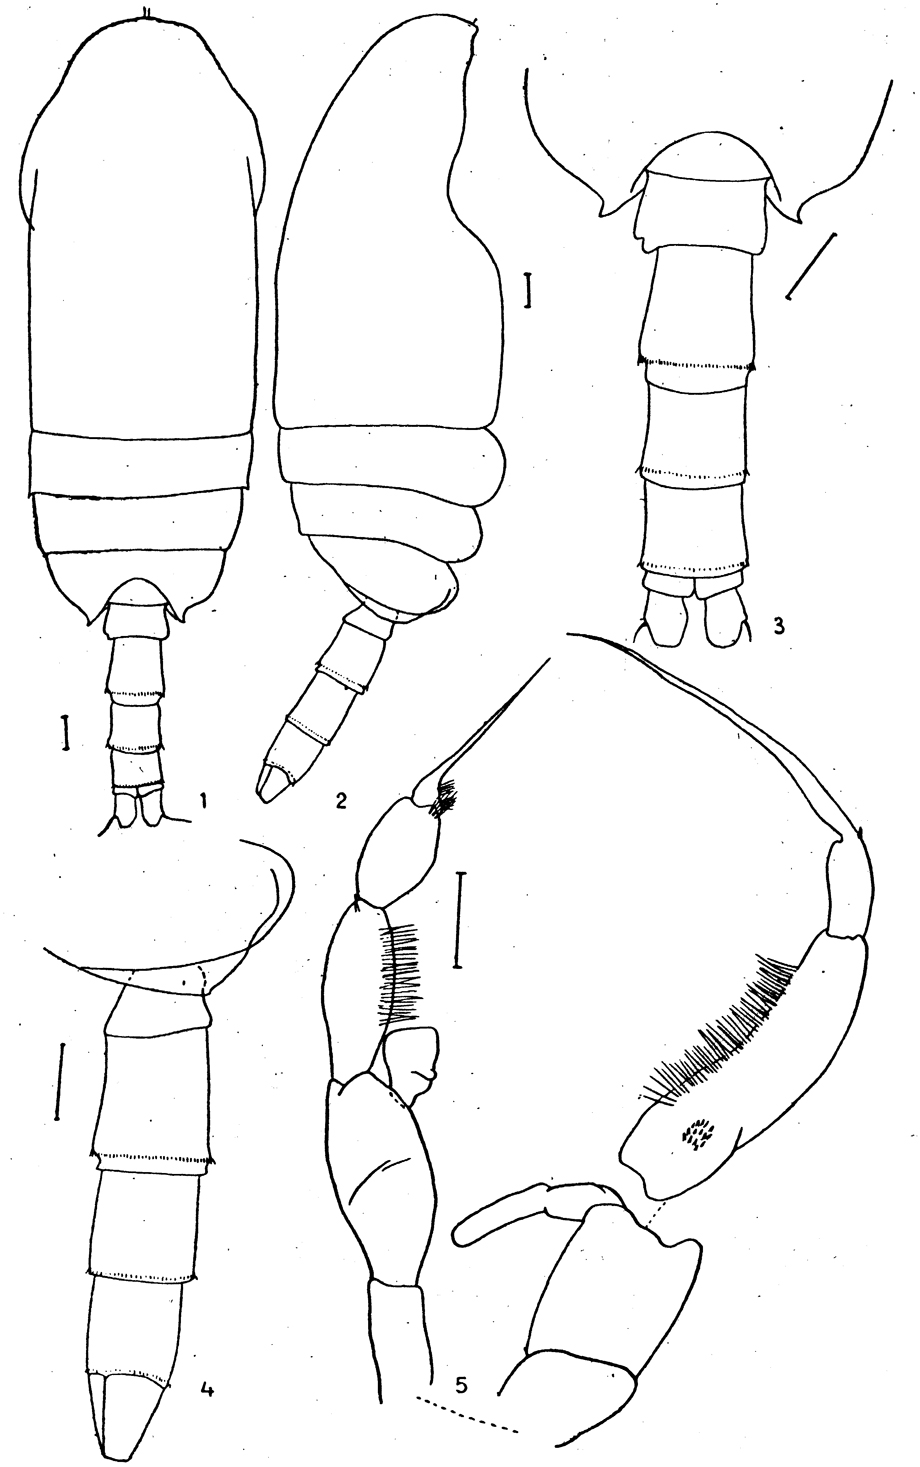 Espce Jaschnovia tolli - Planche 5 de figures morphologiques